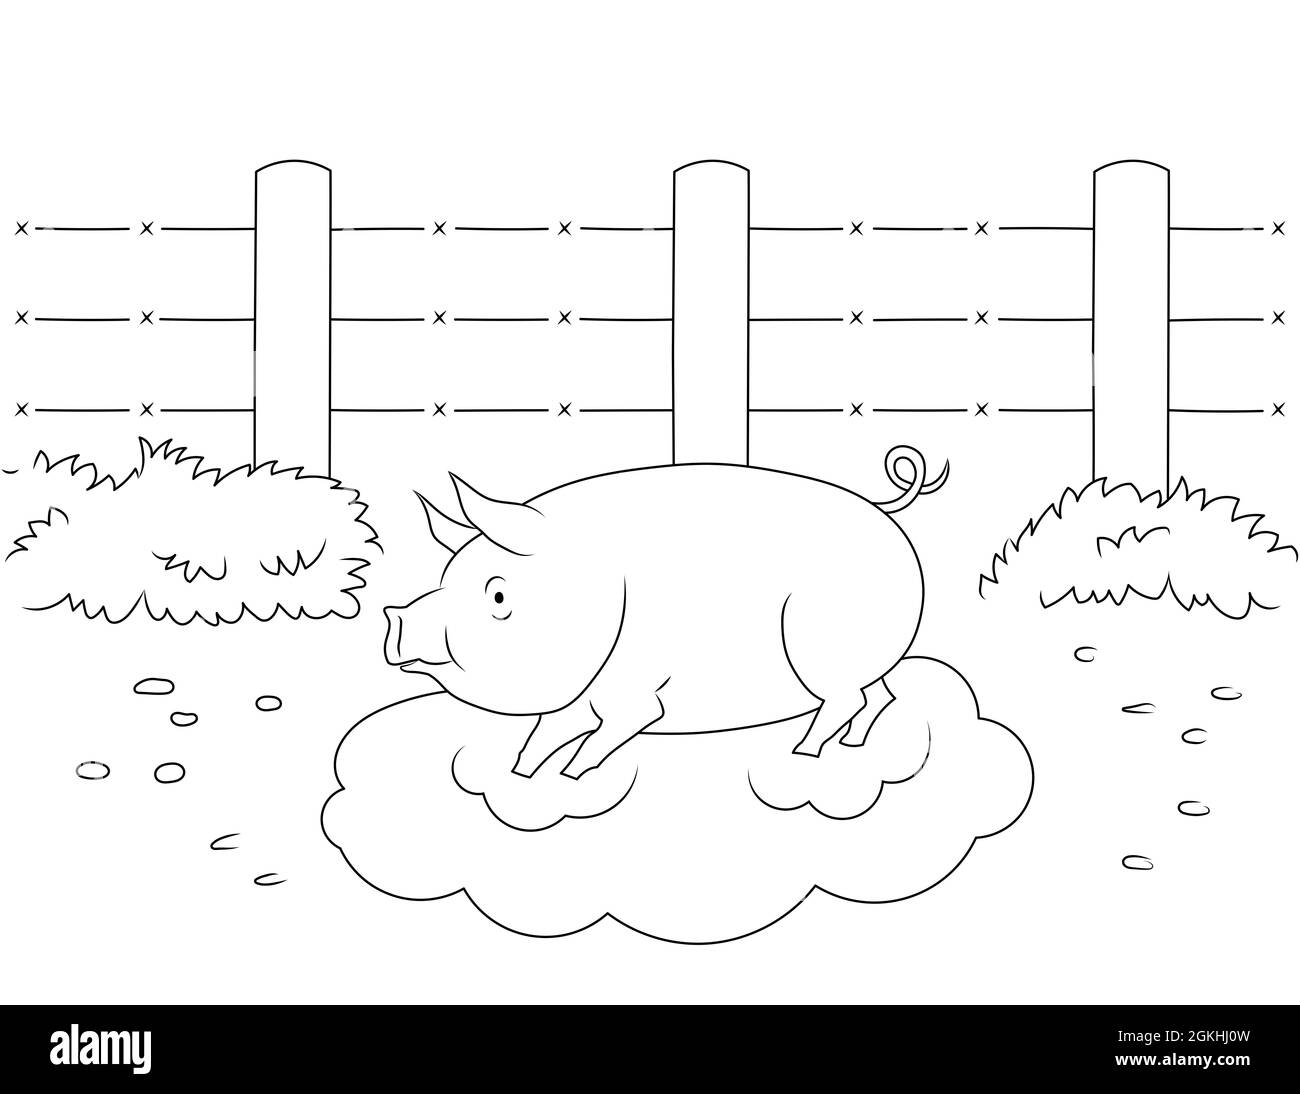 Animaux de la ferme : le cochon à colorier